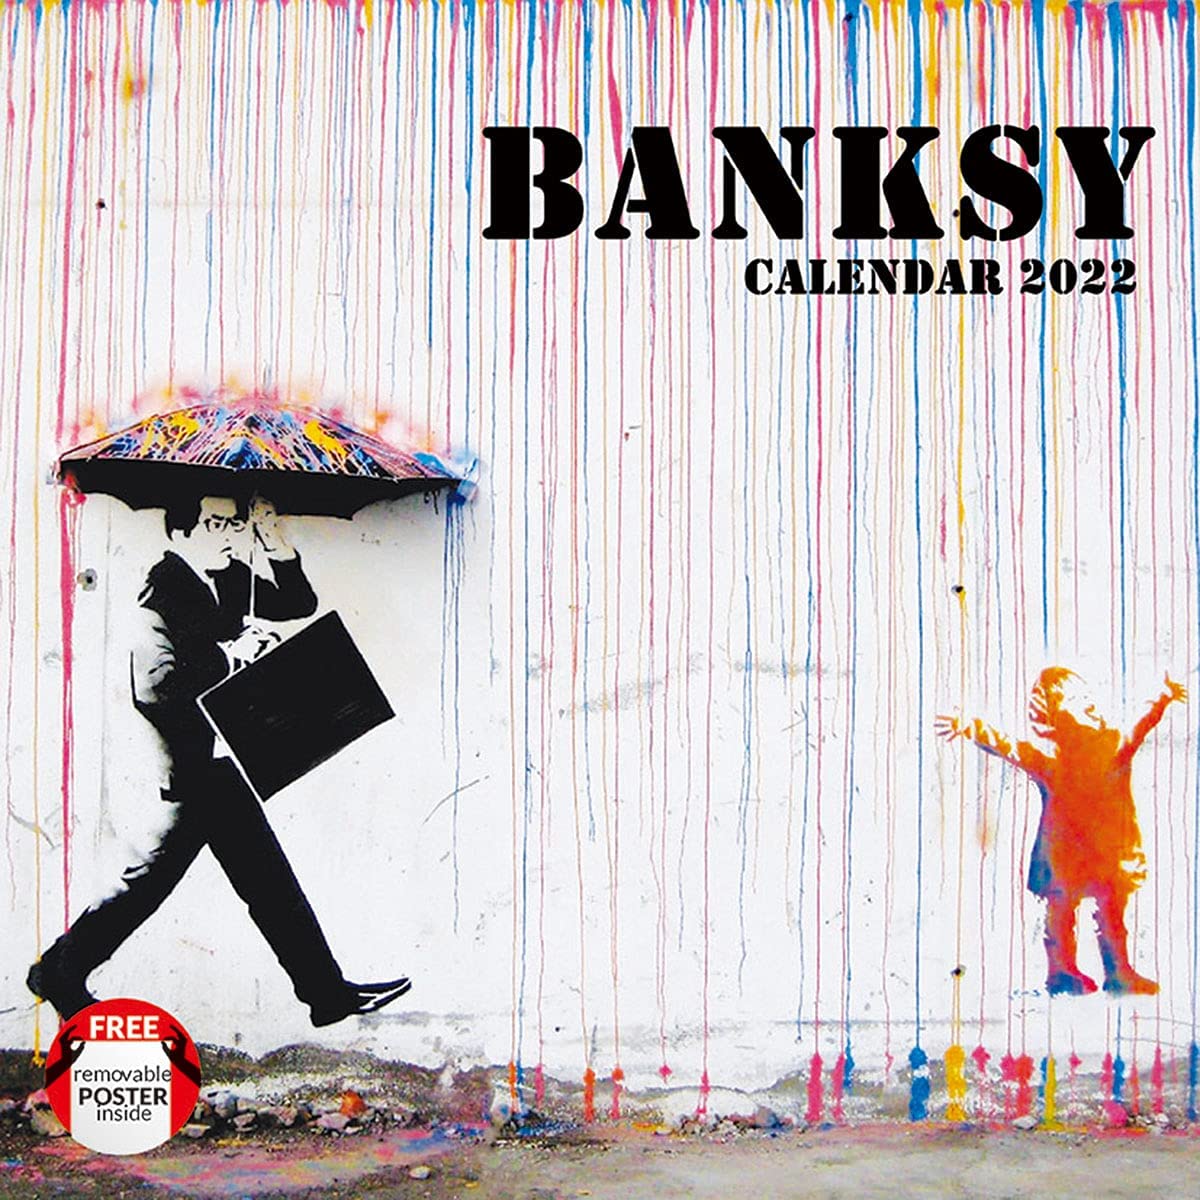 芸術家バンクシーの作品を凝縮した、おすすめの壁掛けカレンダー2022年版